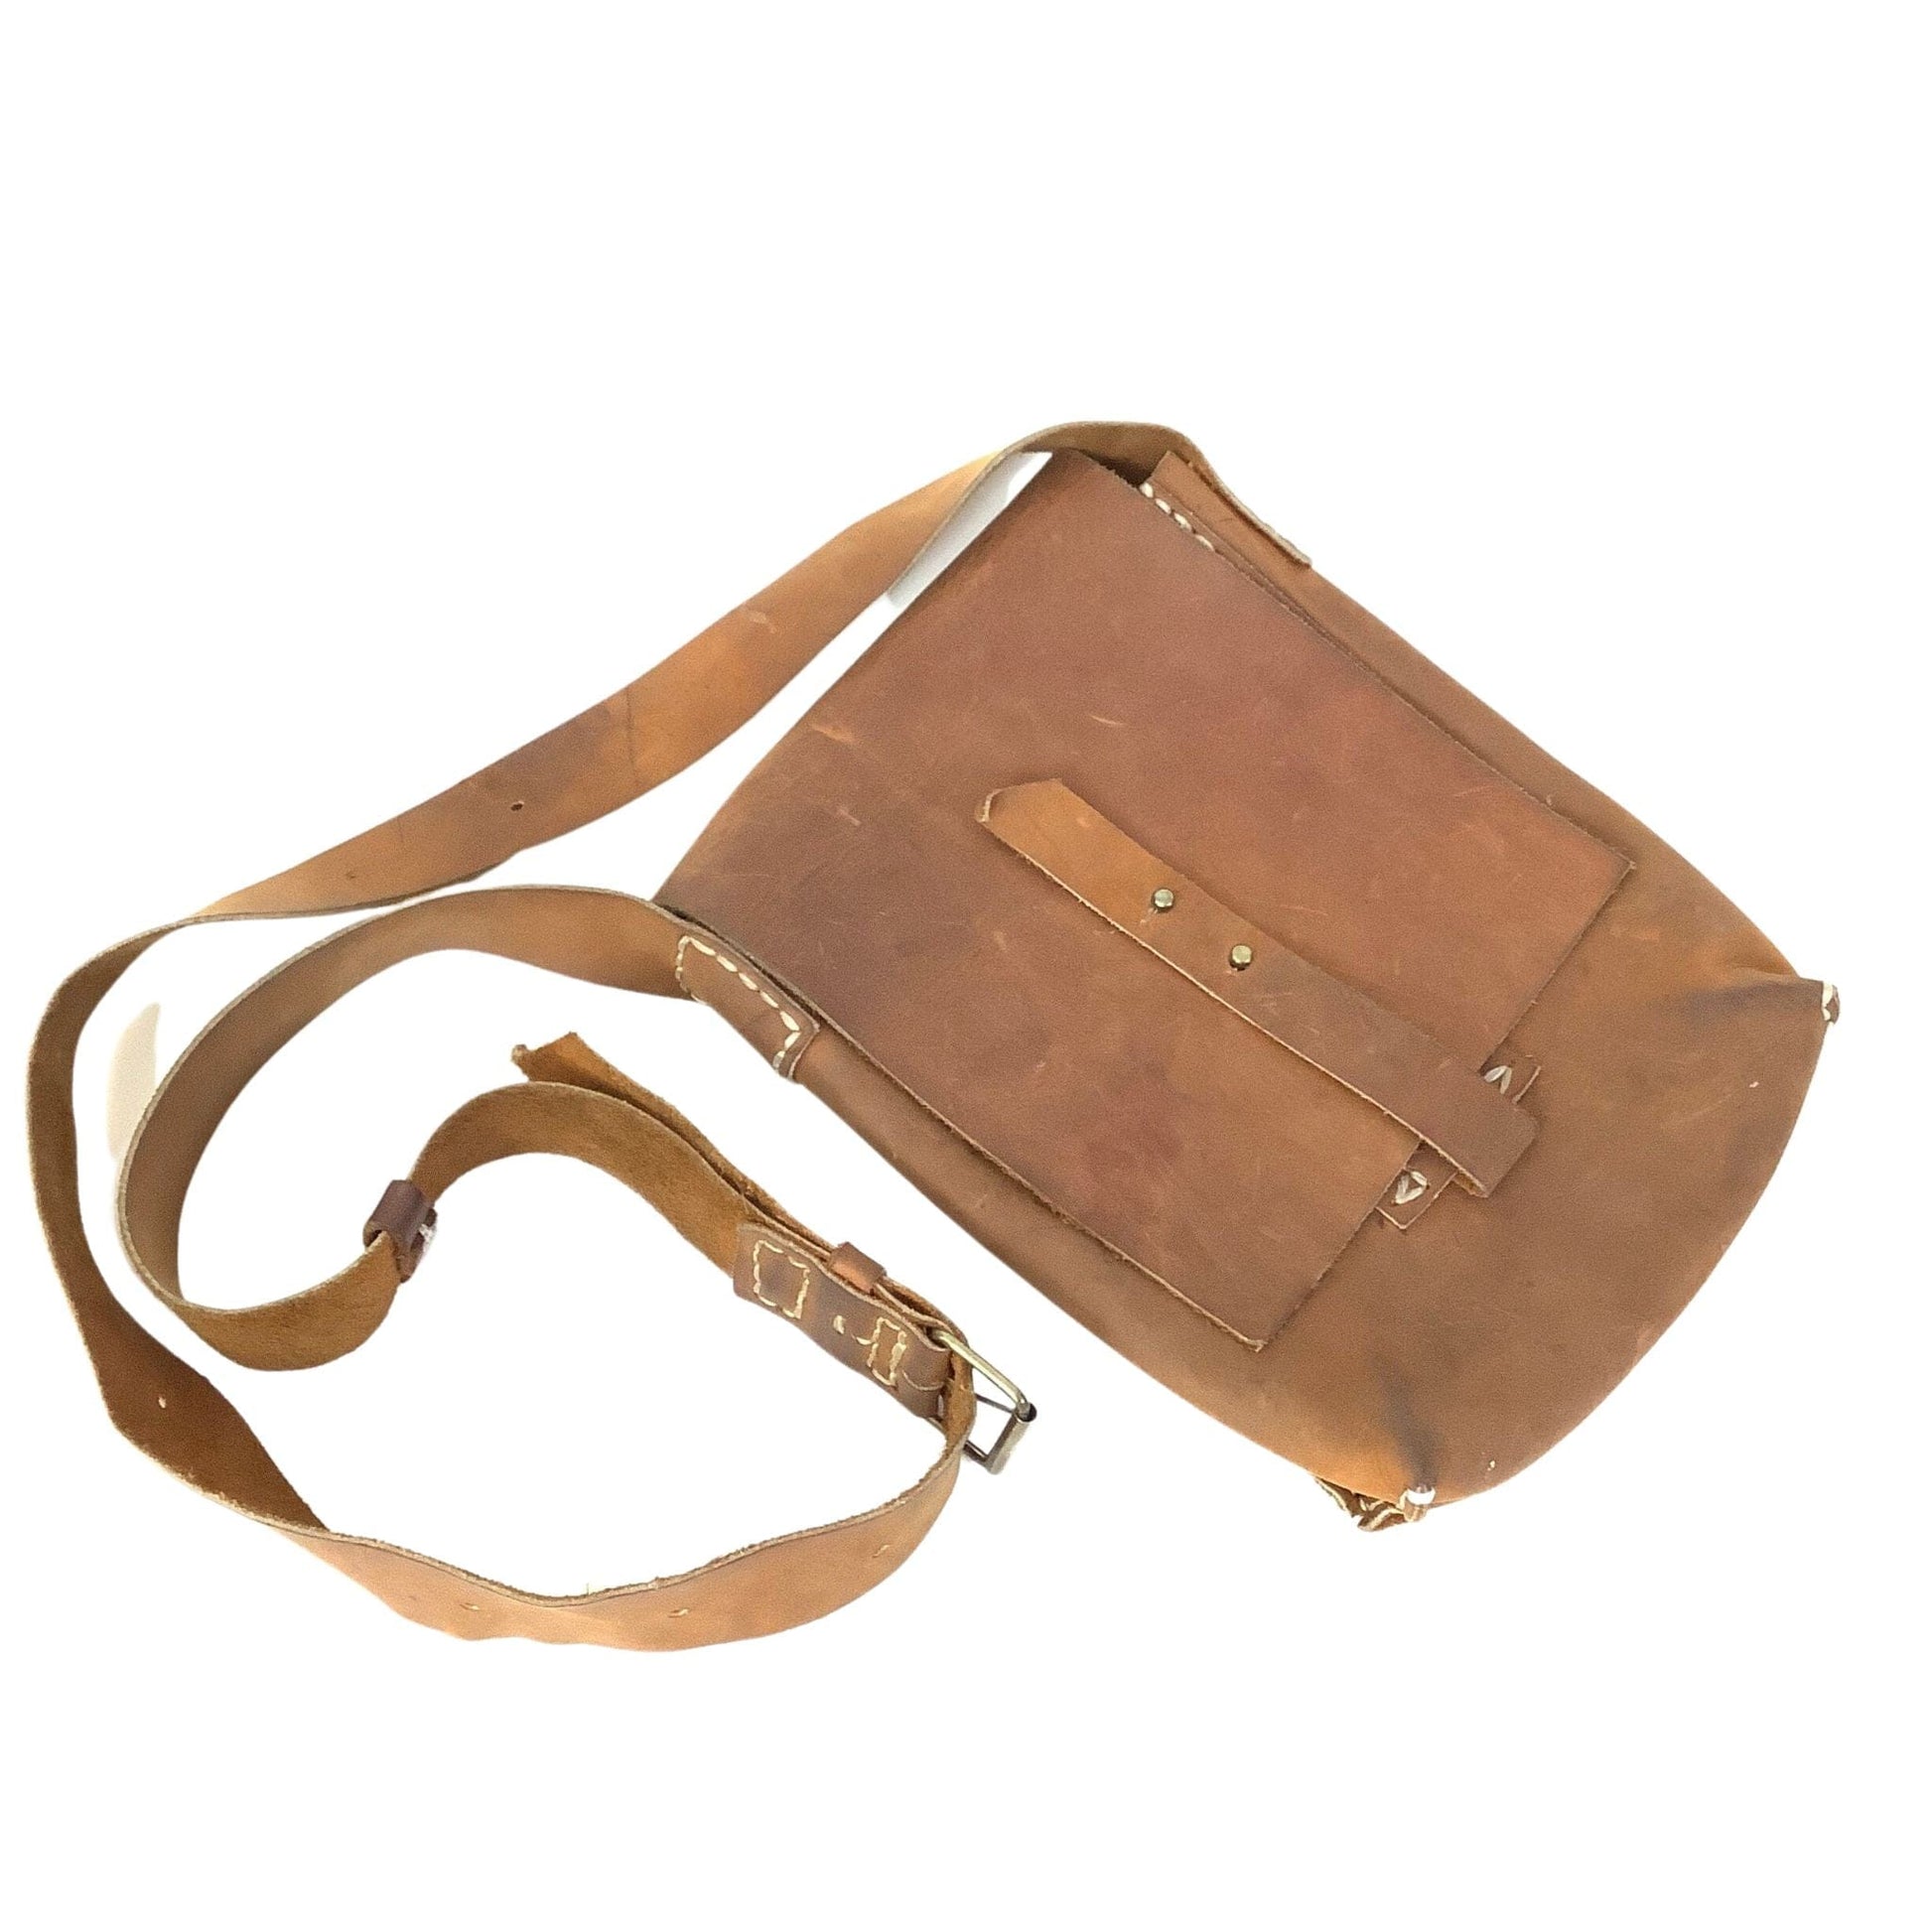 Rustic Messenger Bag Tan / Leather / Vintage 1970s